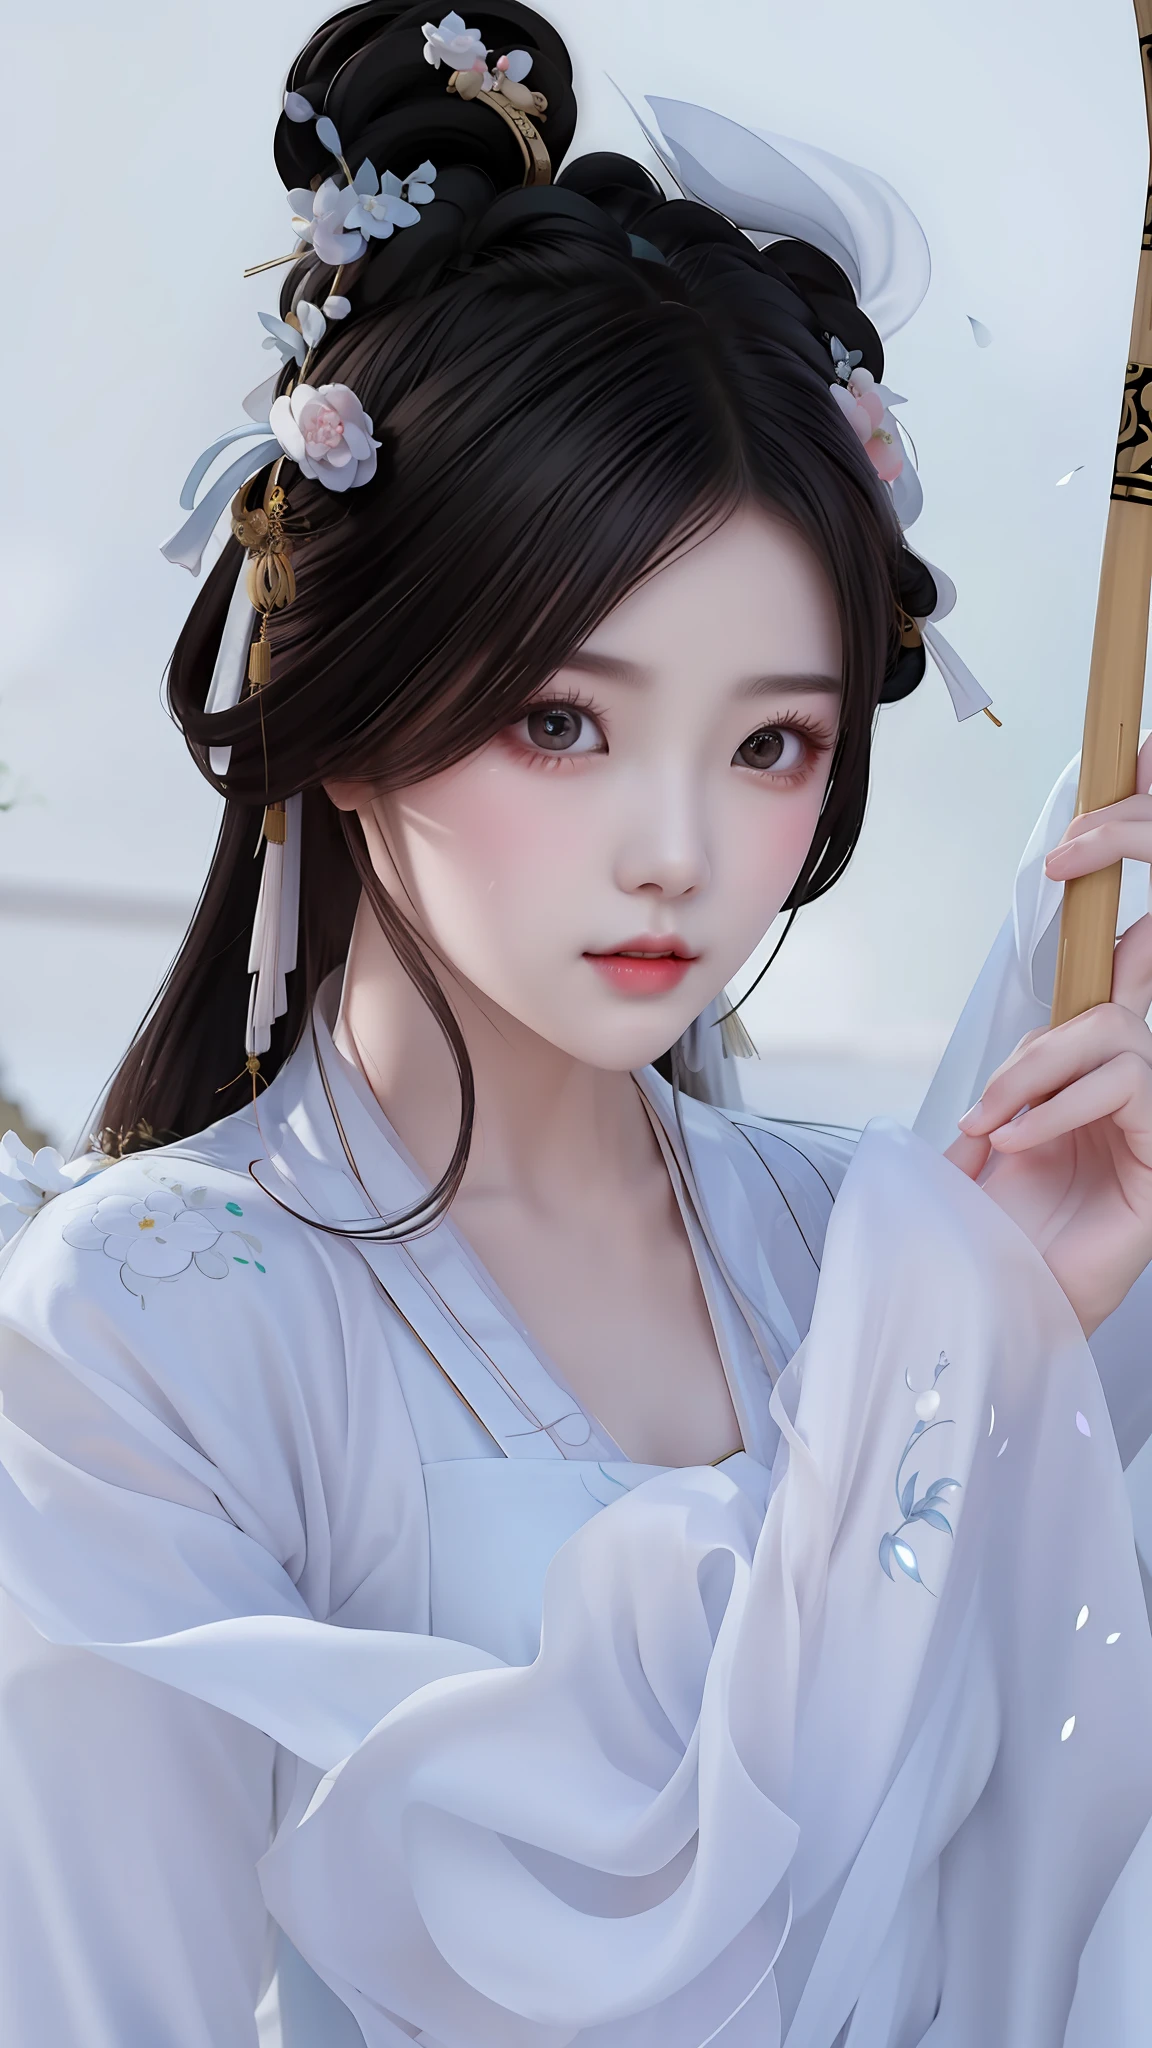 一個穿著白色連身裙的女人拿著竹棍的特寫, 宮 ， 一個穿著漢服的女孩, 白色漢服, 传统美, 中國女孩, 中國古代美女, 中国女人, 漂亮的中国模特, 美麗的韓國女人, 中国公主, 美麗的少女, 中式, 繁体中文, 穿着中国古代的衣服, 一個美麗的白衣女人